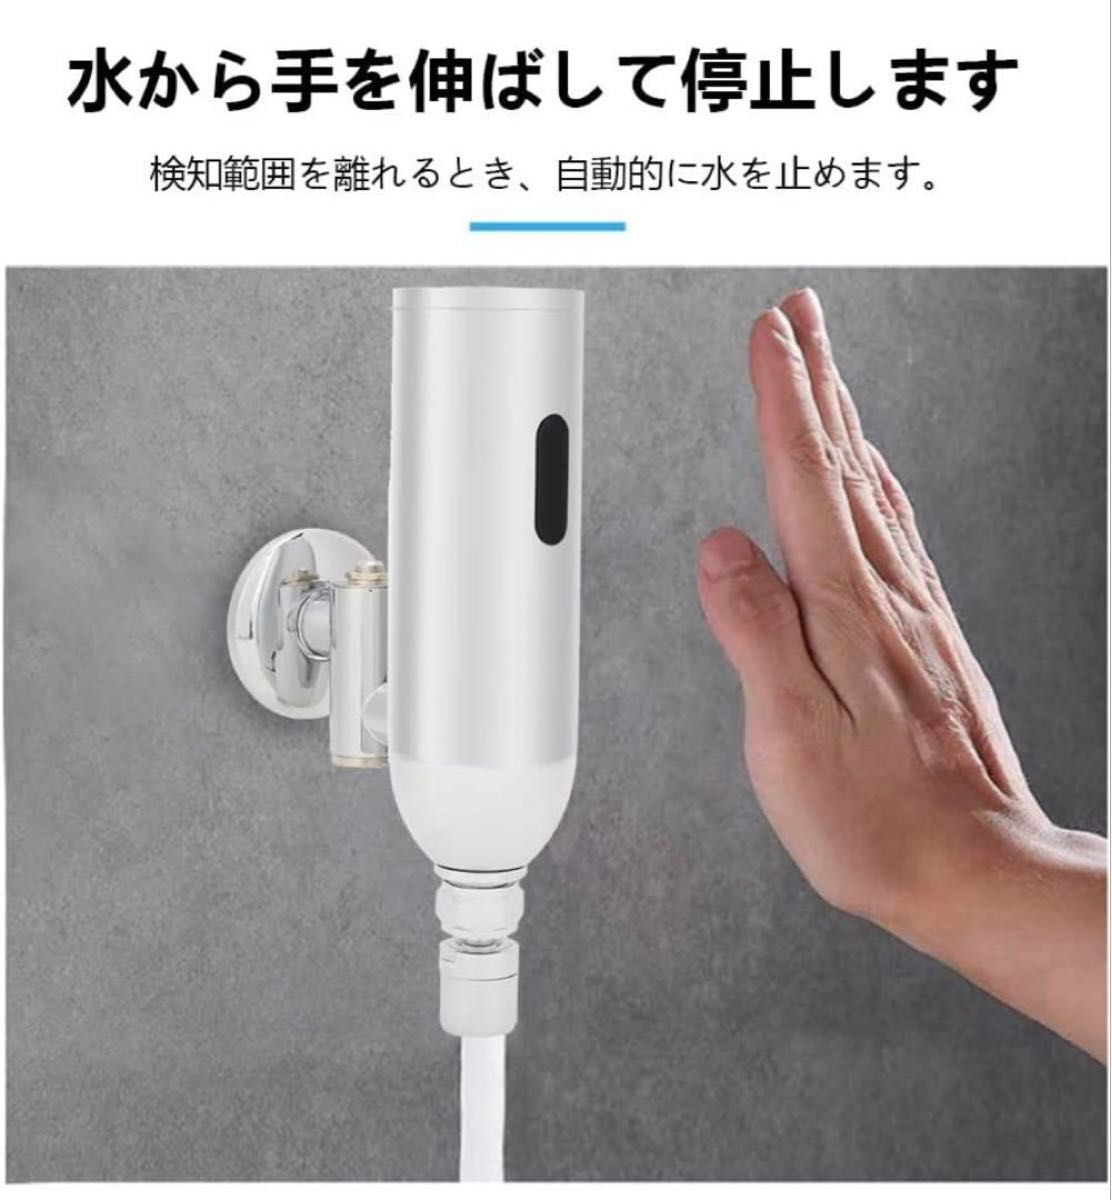 【未使用新品】自動水栓 センサー水栓 単水栓 自動蛇口 